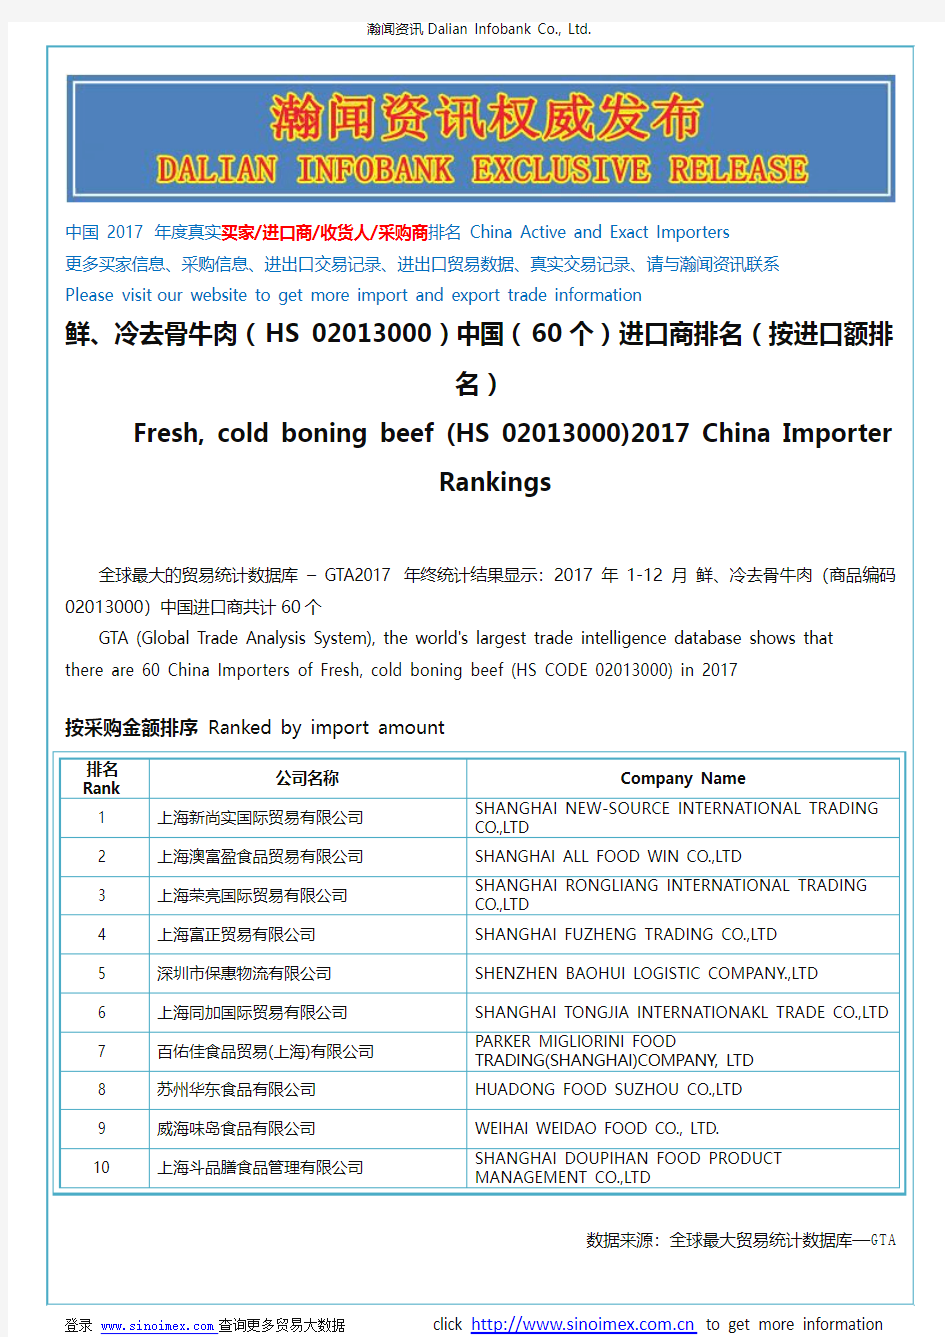 鲜、冷去骨牛肉(HS 02013000)2017 中国(60个)进口商排名(按进口额排名)